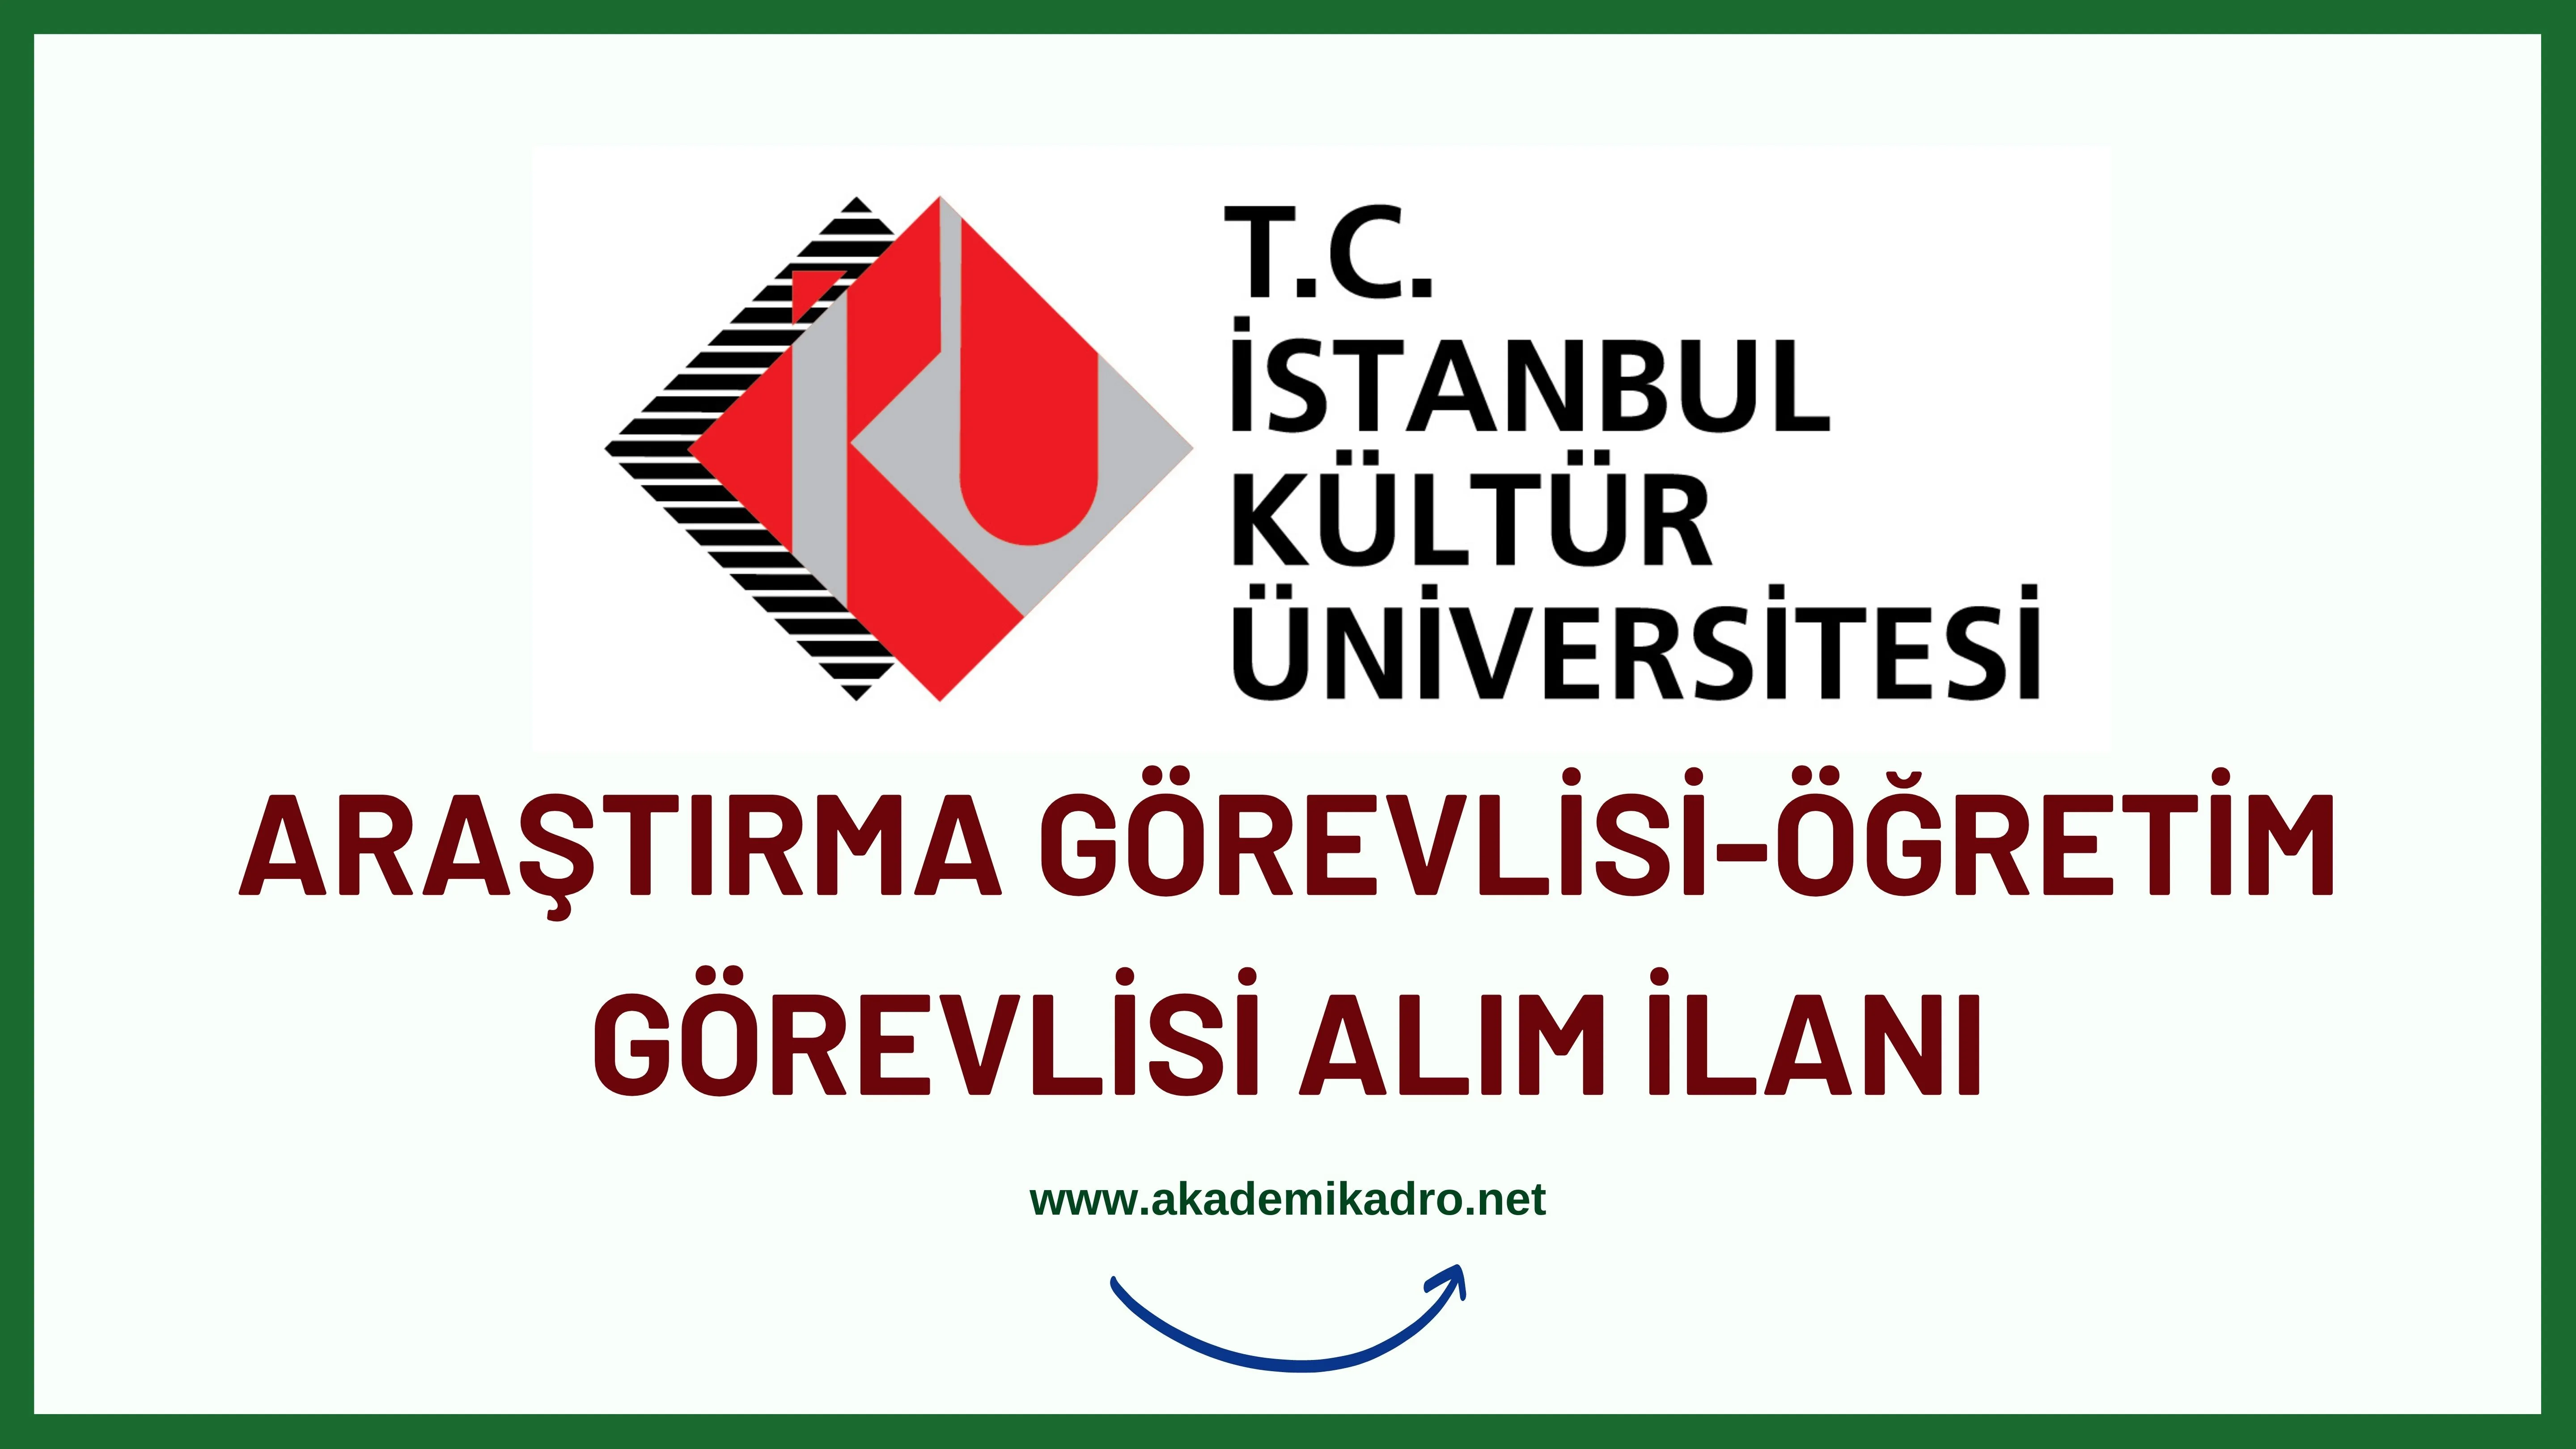 İstanbul Kültür Üniversitesi 5 Araştırma görevlisi alacaktır.